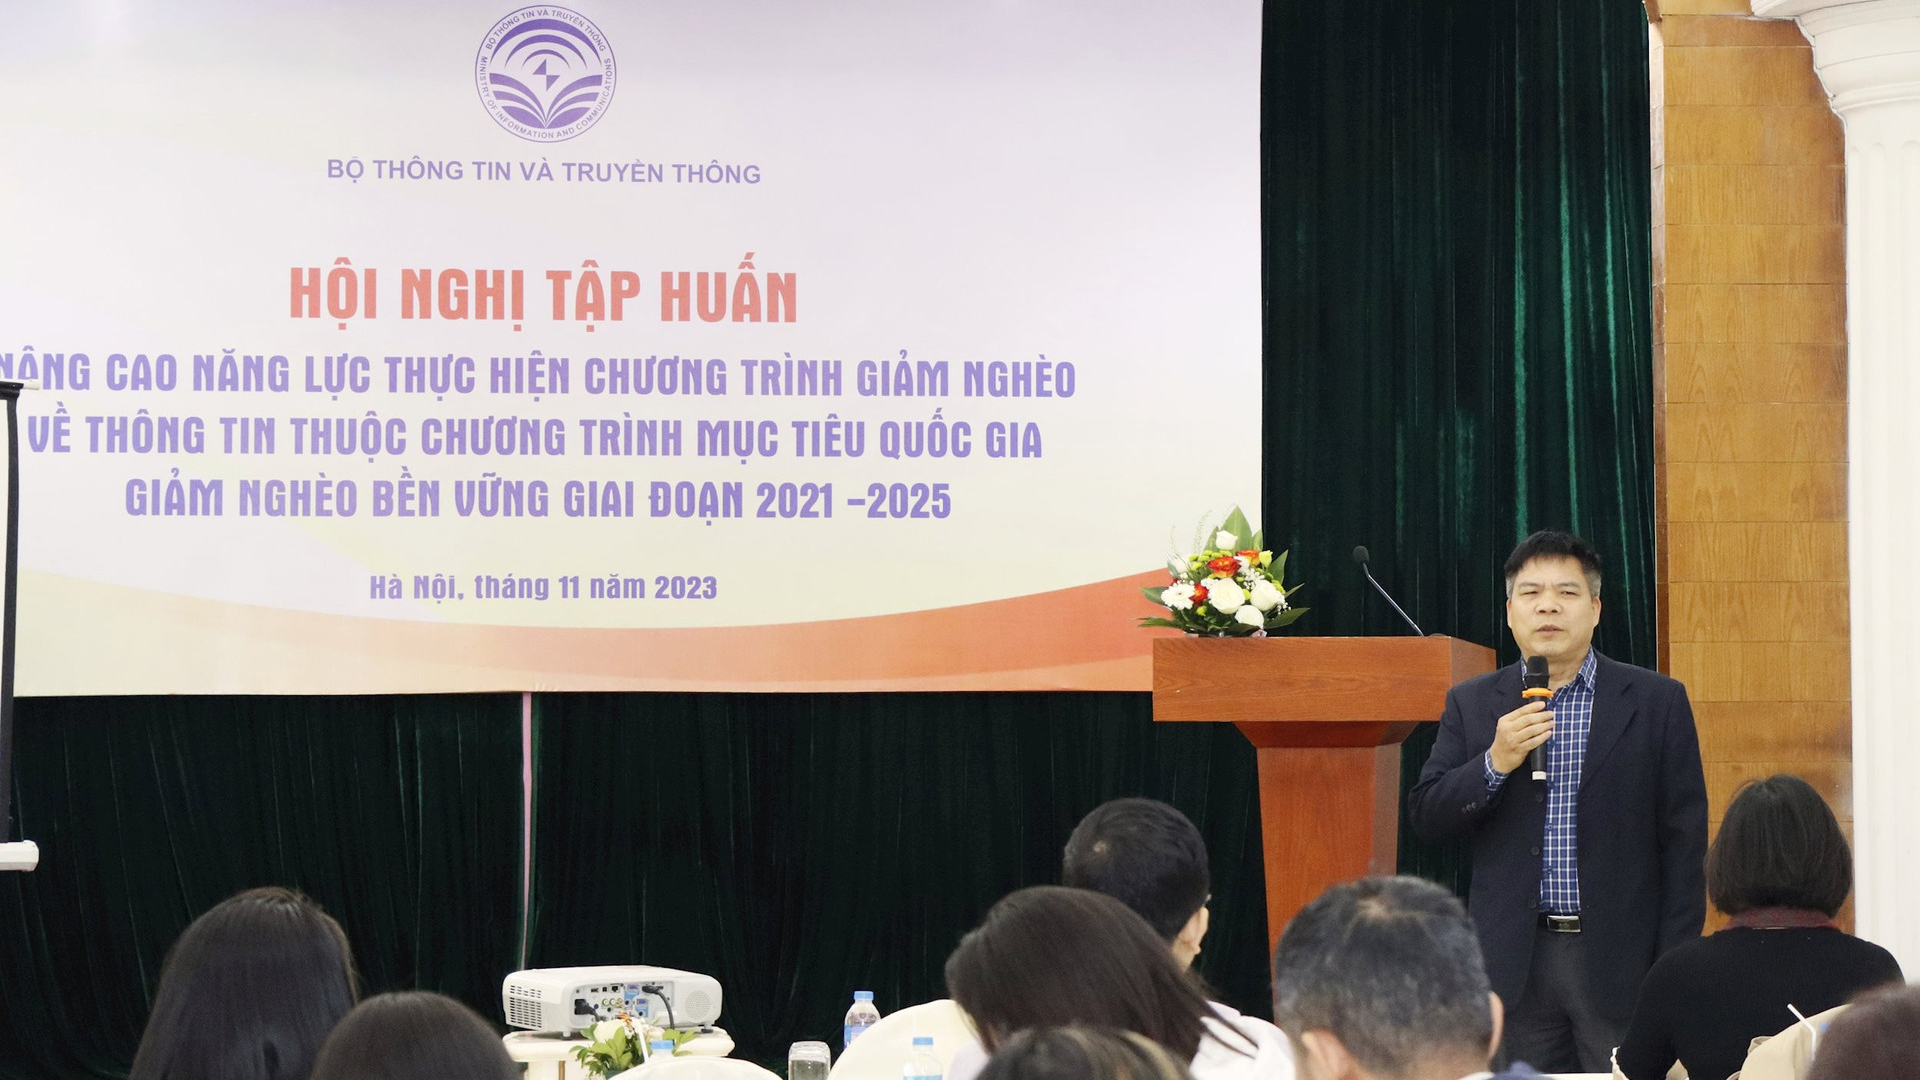 Ông Đinh Xuân Thắng - Phó Vụ trưởng Tuyên truyền, Ủy ban Dân tộc trình bày tại Hội nghị